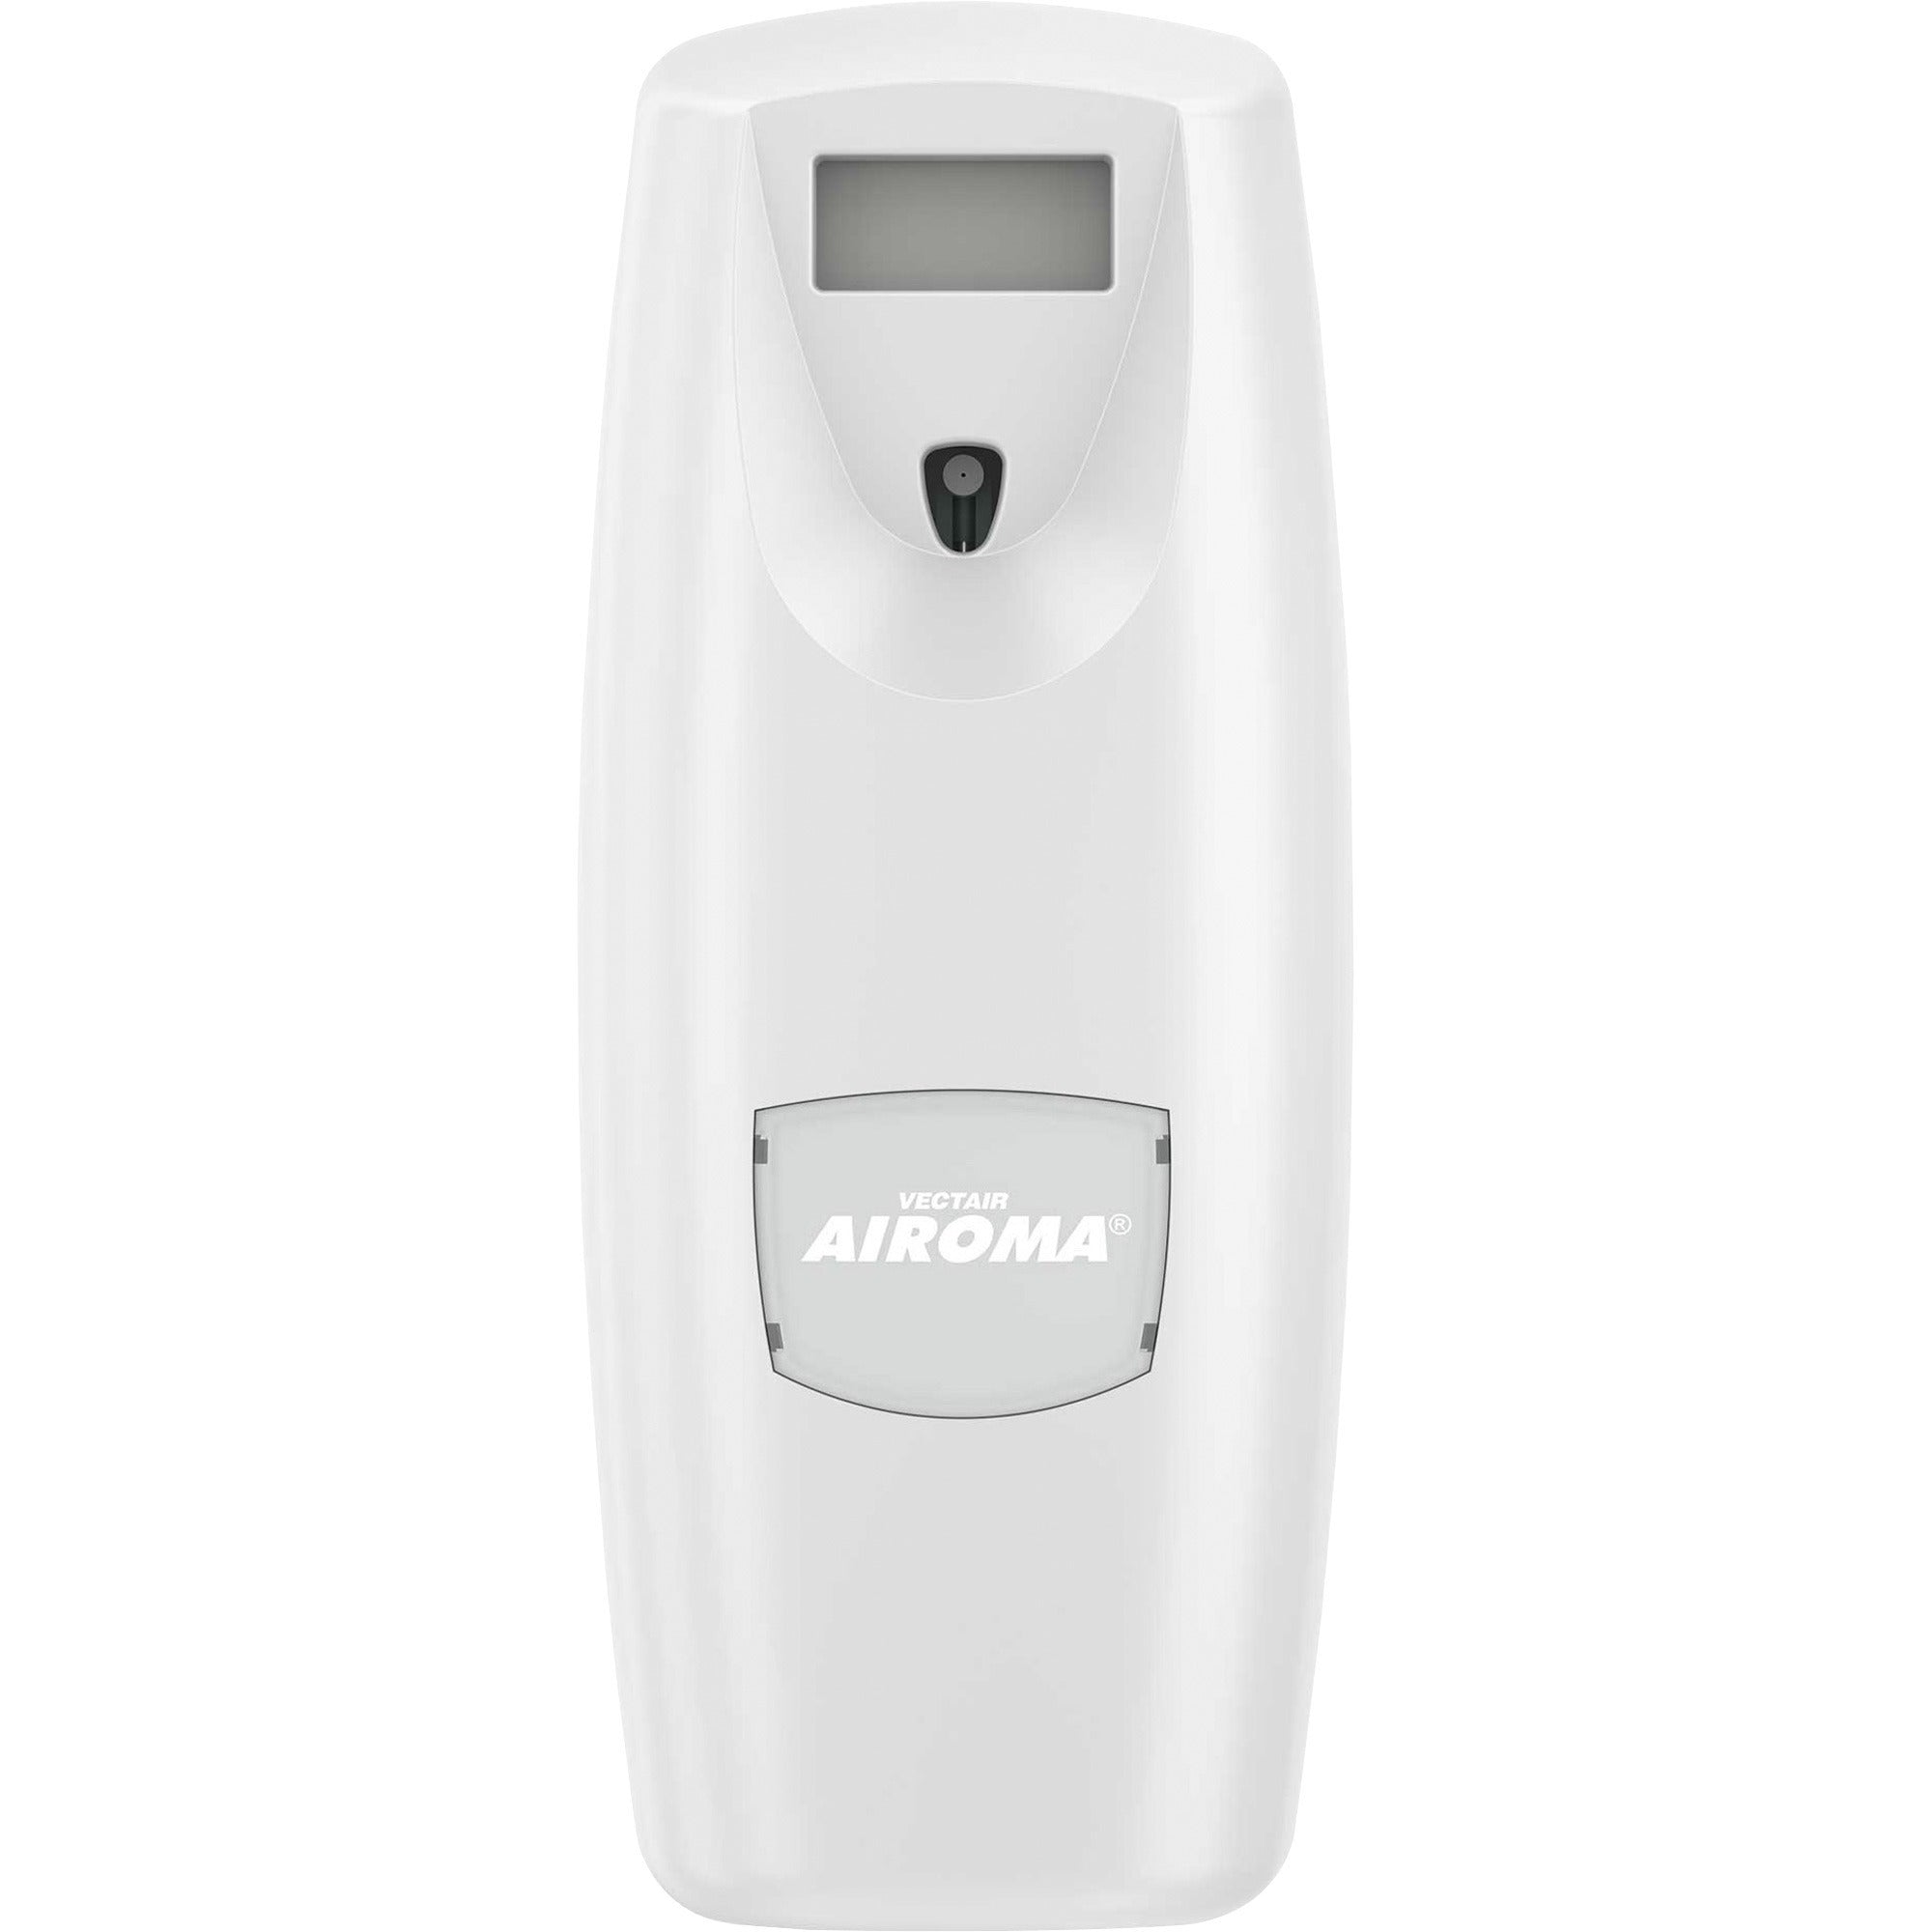 vectair-systems-airoma-aerosol-air-freshener-dispenser-60-day-refill-life-6000-ft-coverage-1-each-white_vtsadisw2 - 1